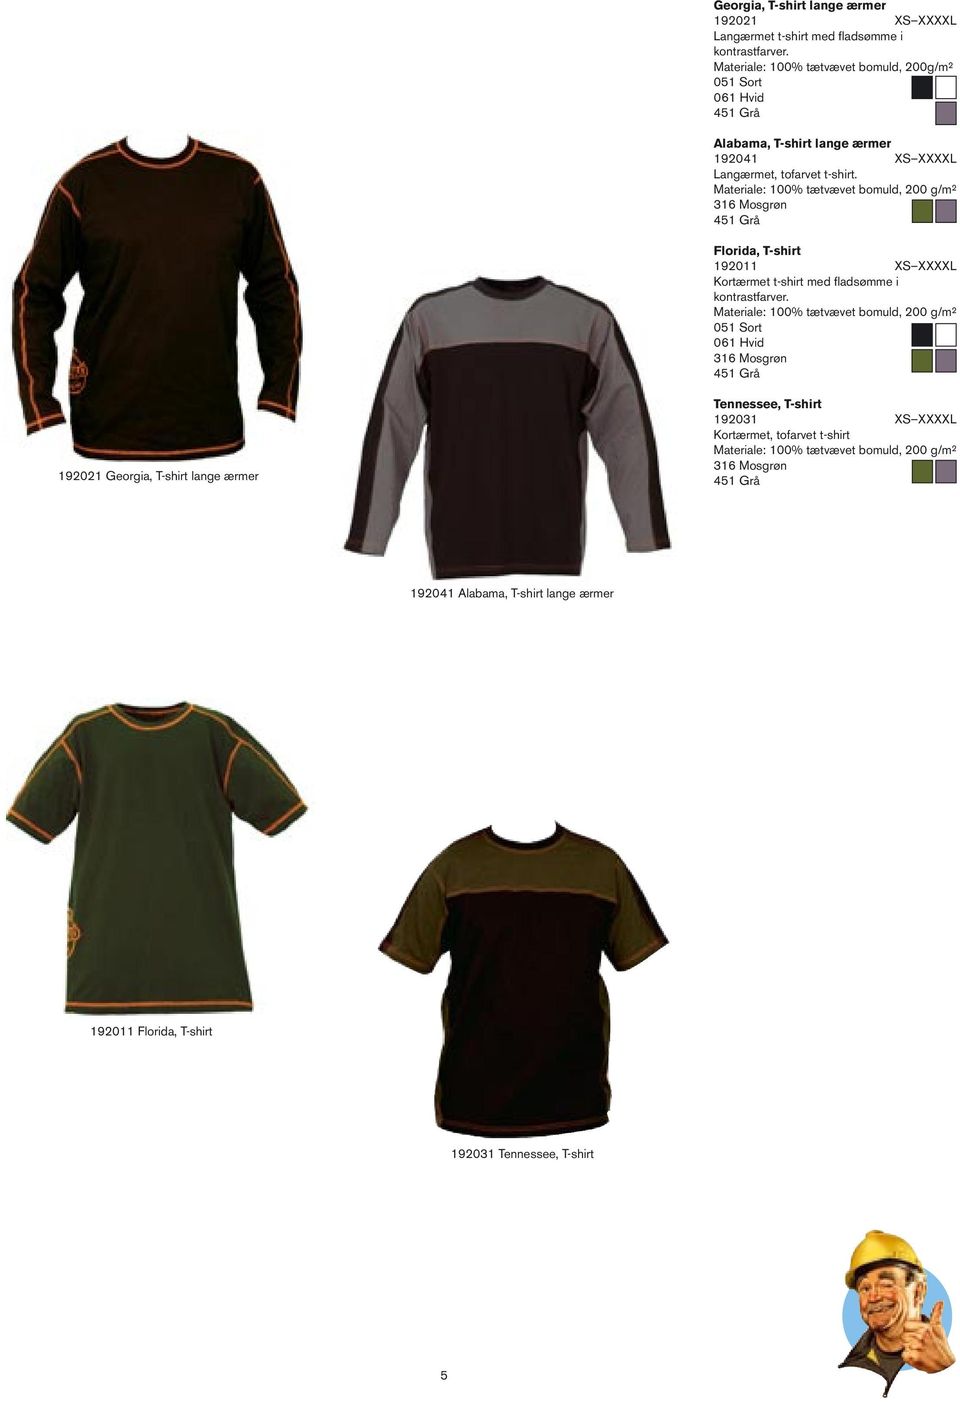 Materiale: 00% tætvævet bomuld, 00 g/m² 6 Mosgrøn 45 Grå Florida, T-shirt 90 XS XXXXL Kortærmet t-shirt med fladsømme i kontrastfarver.